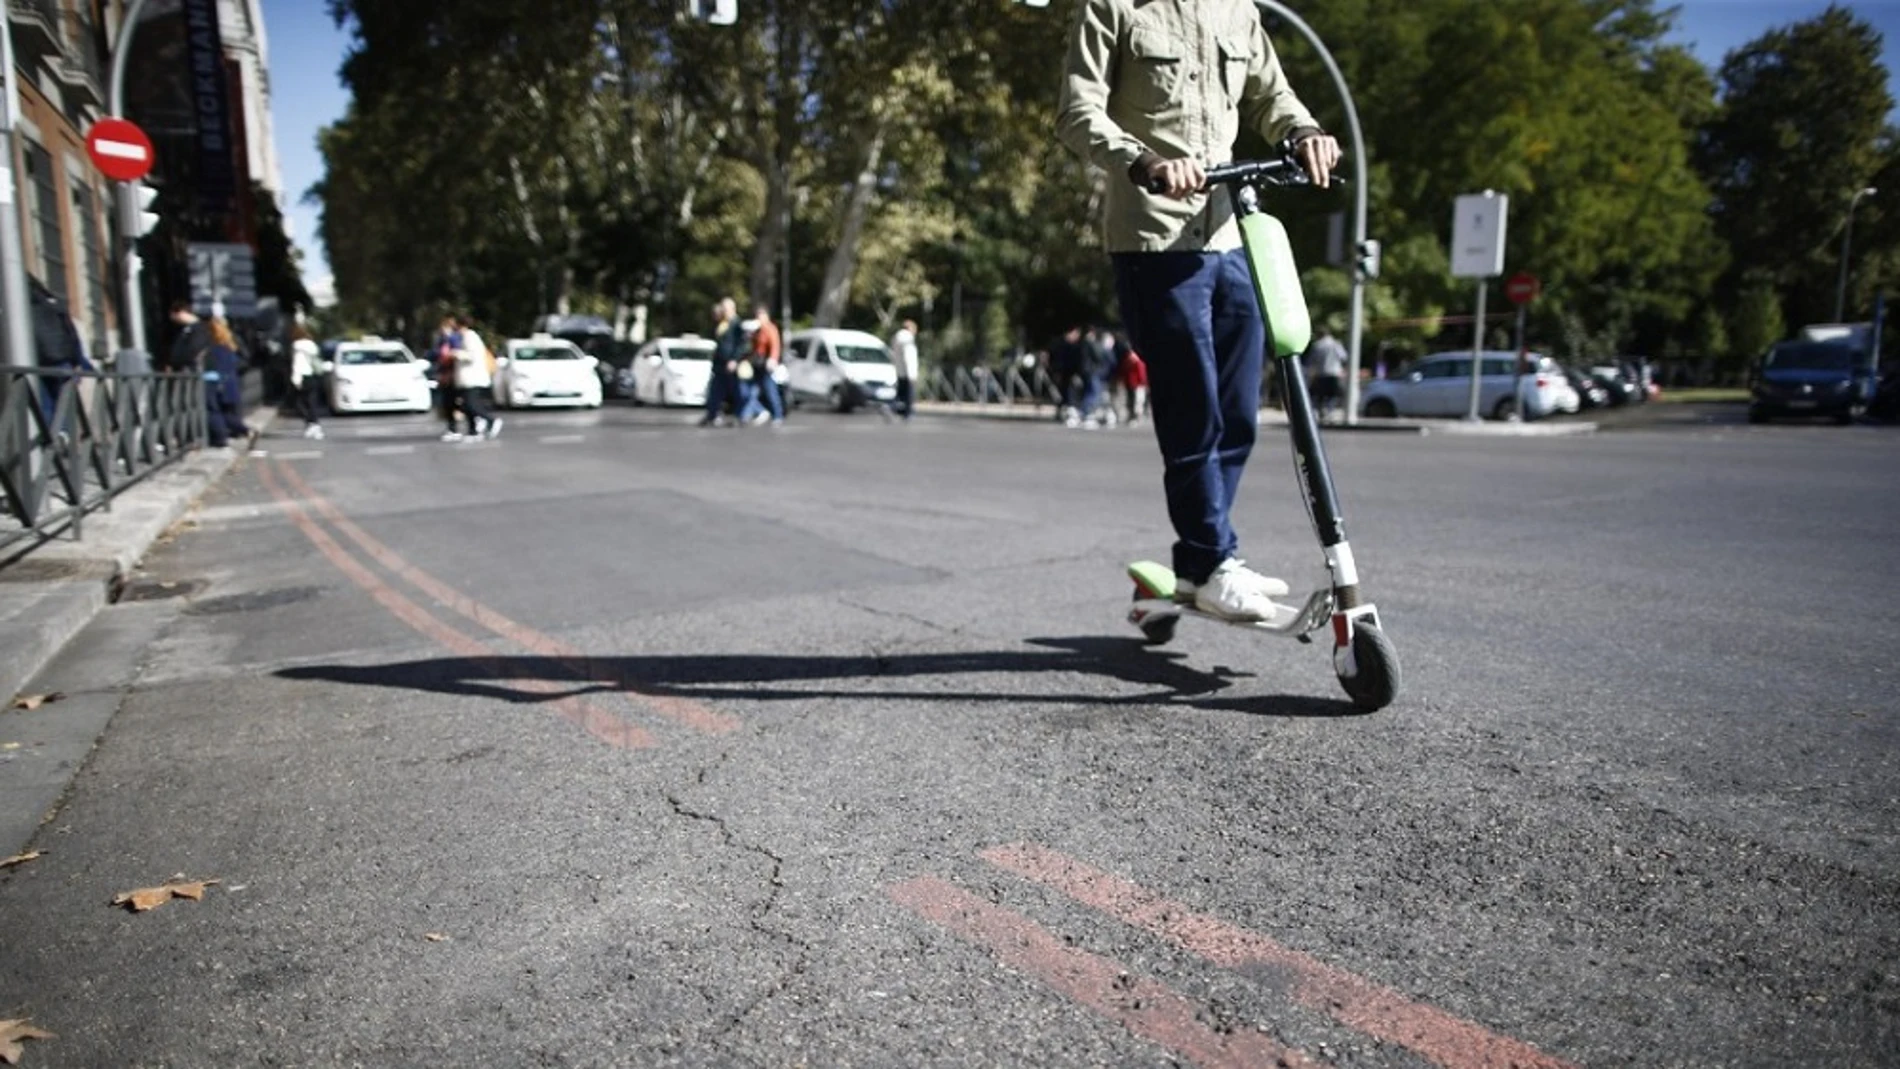 Un patinador se da a la fuga en Madrid después de atropellar a una mujer y dejarla en estado muy grave